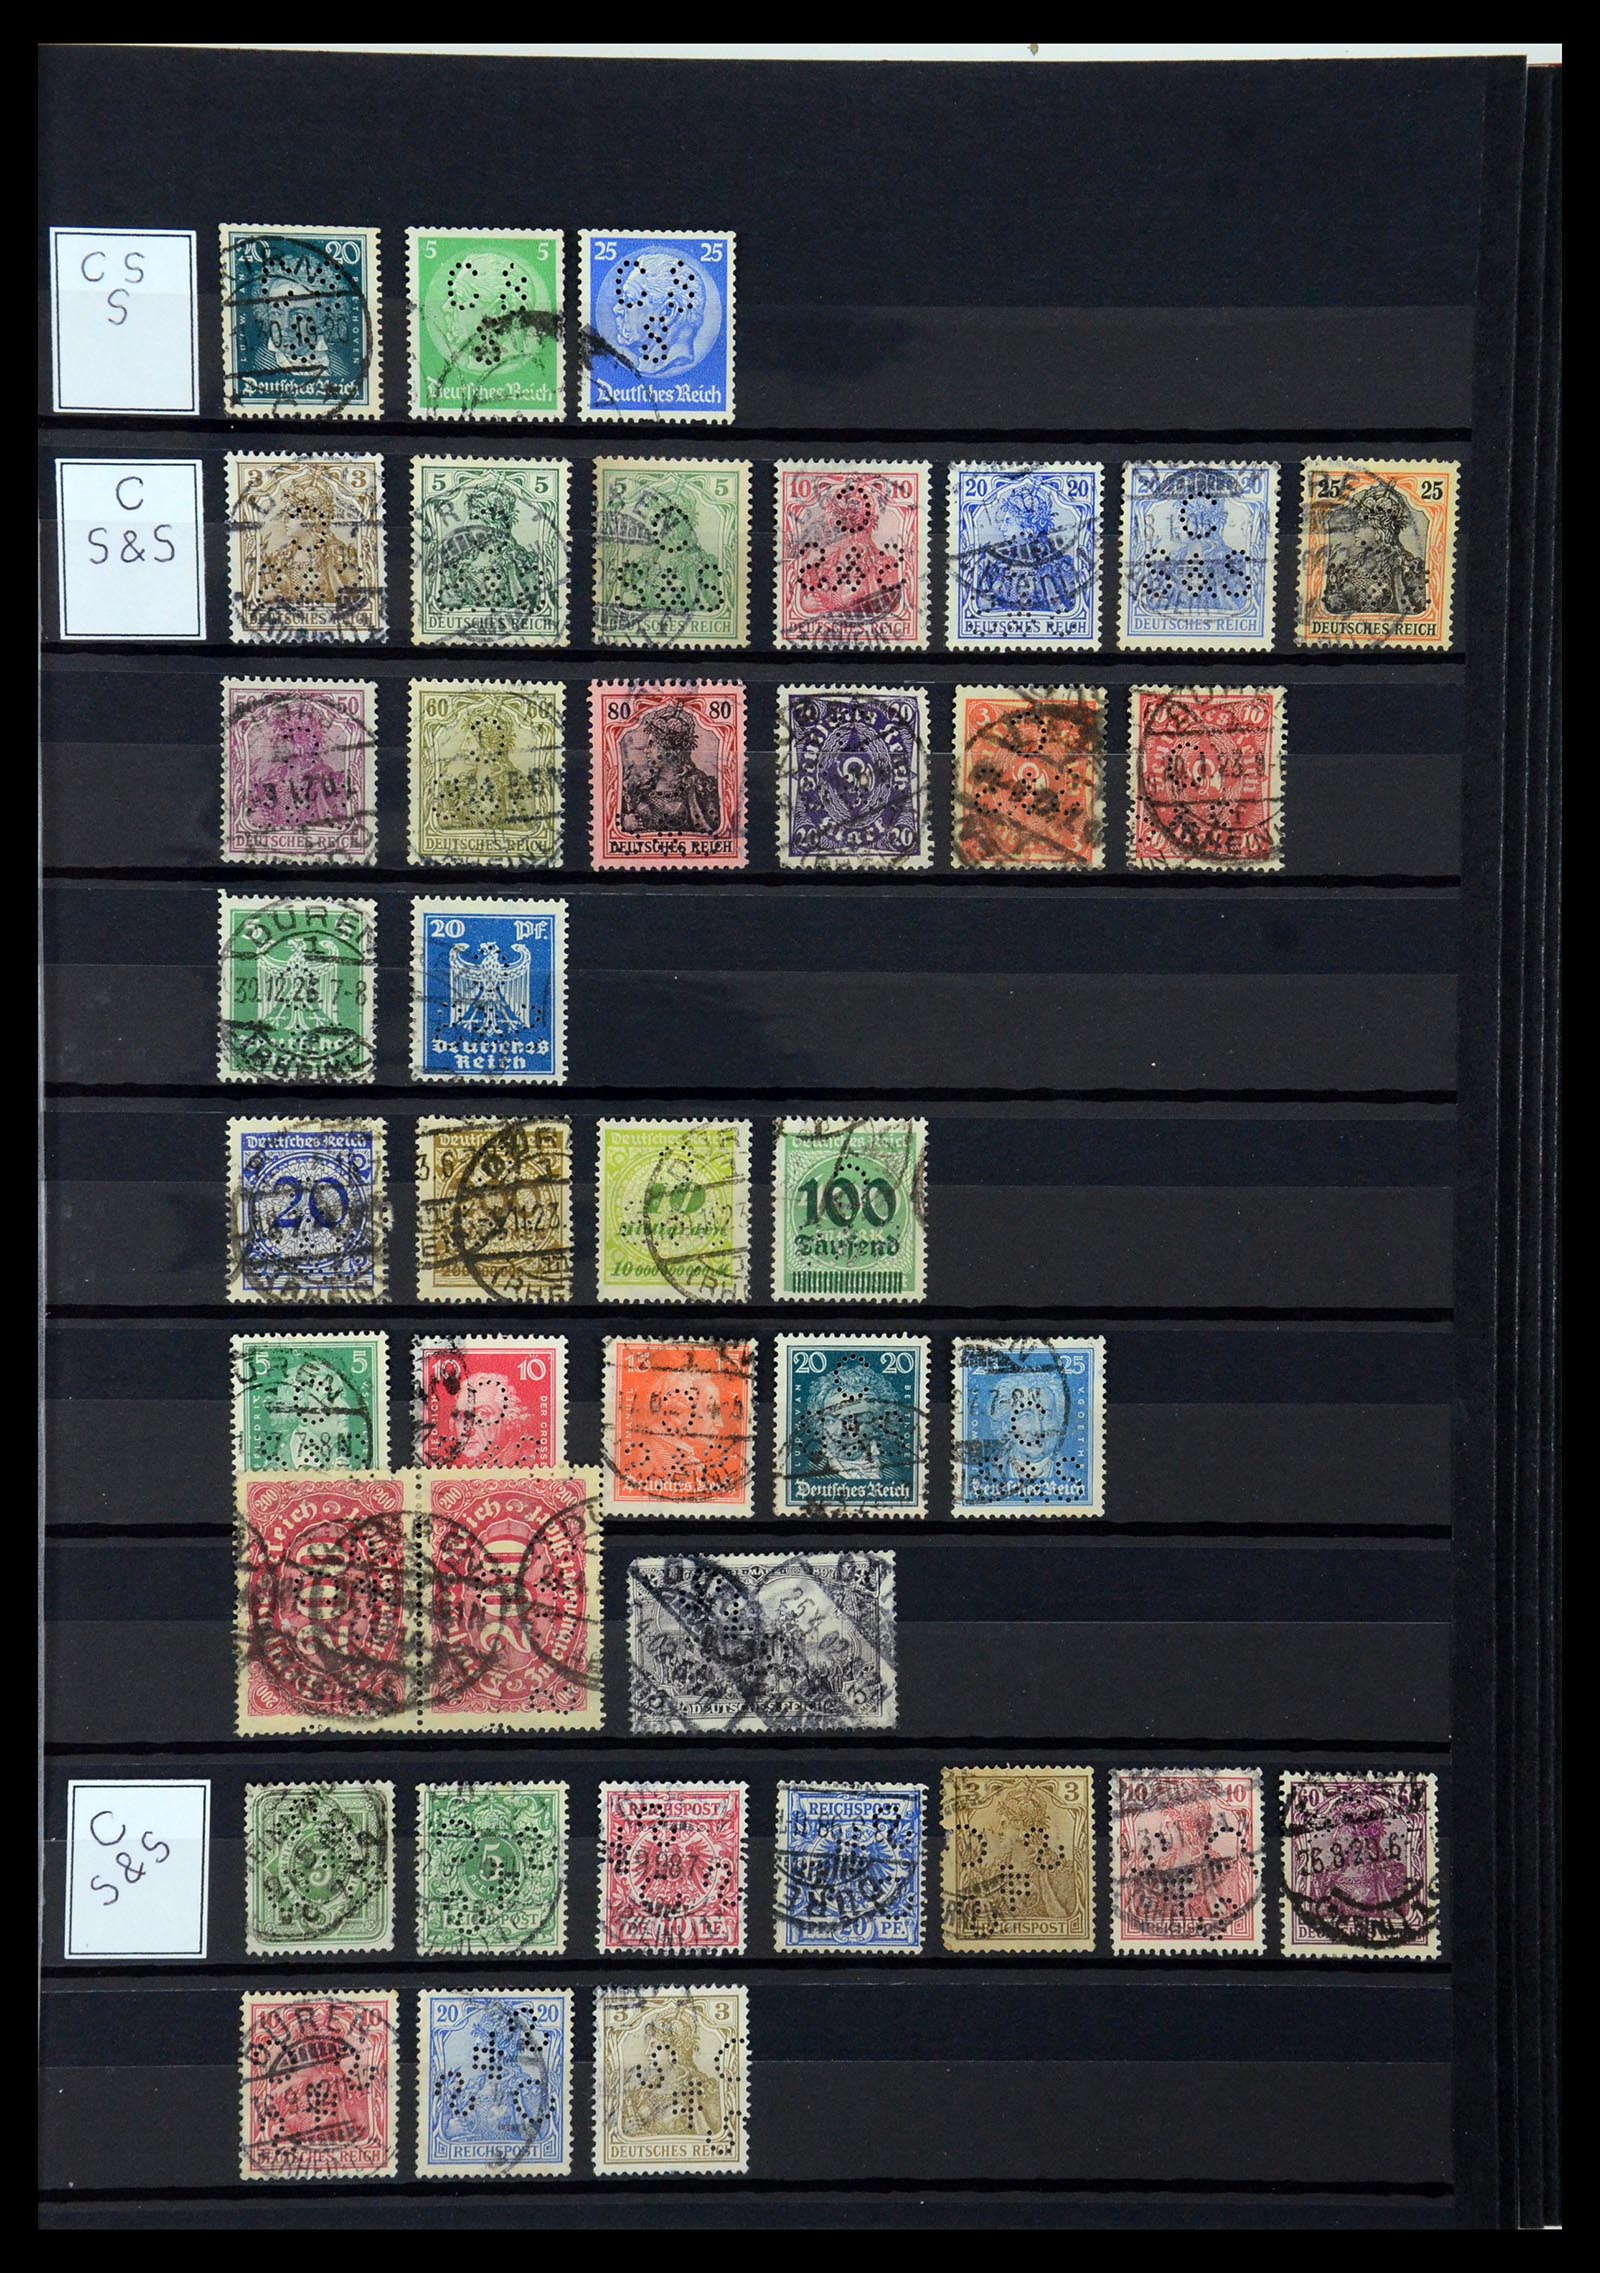 36405 083 - Stamp collection 36405 German Reich perfins 1880-1945.